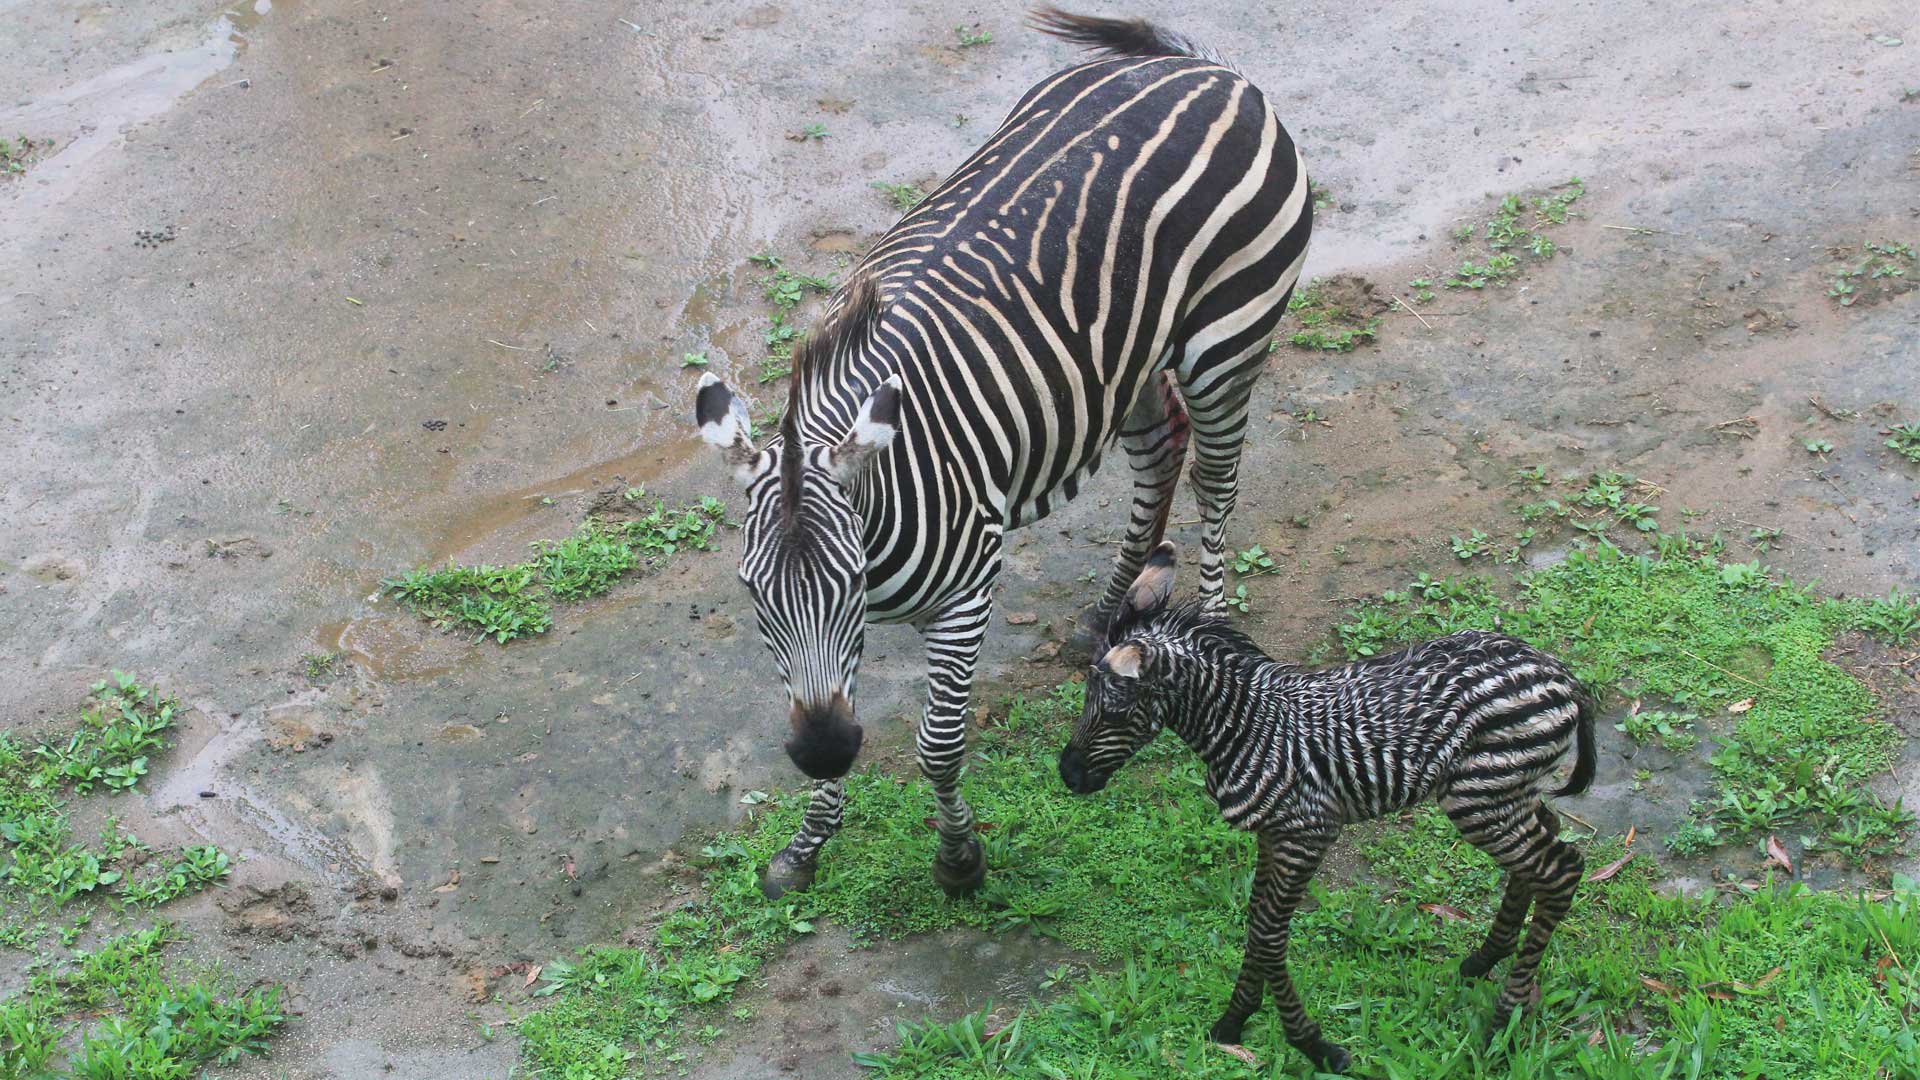 https://cdn.aucklandunlimited.com/zoo/assets/media/zebra-calf-gallery-1.jpg